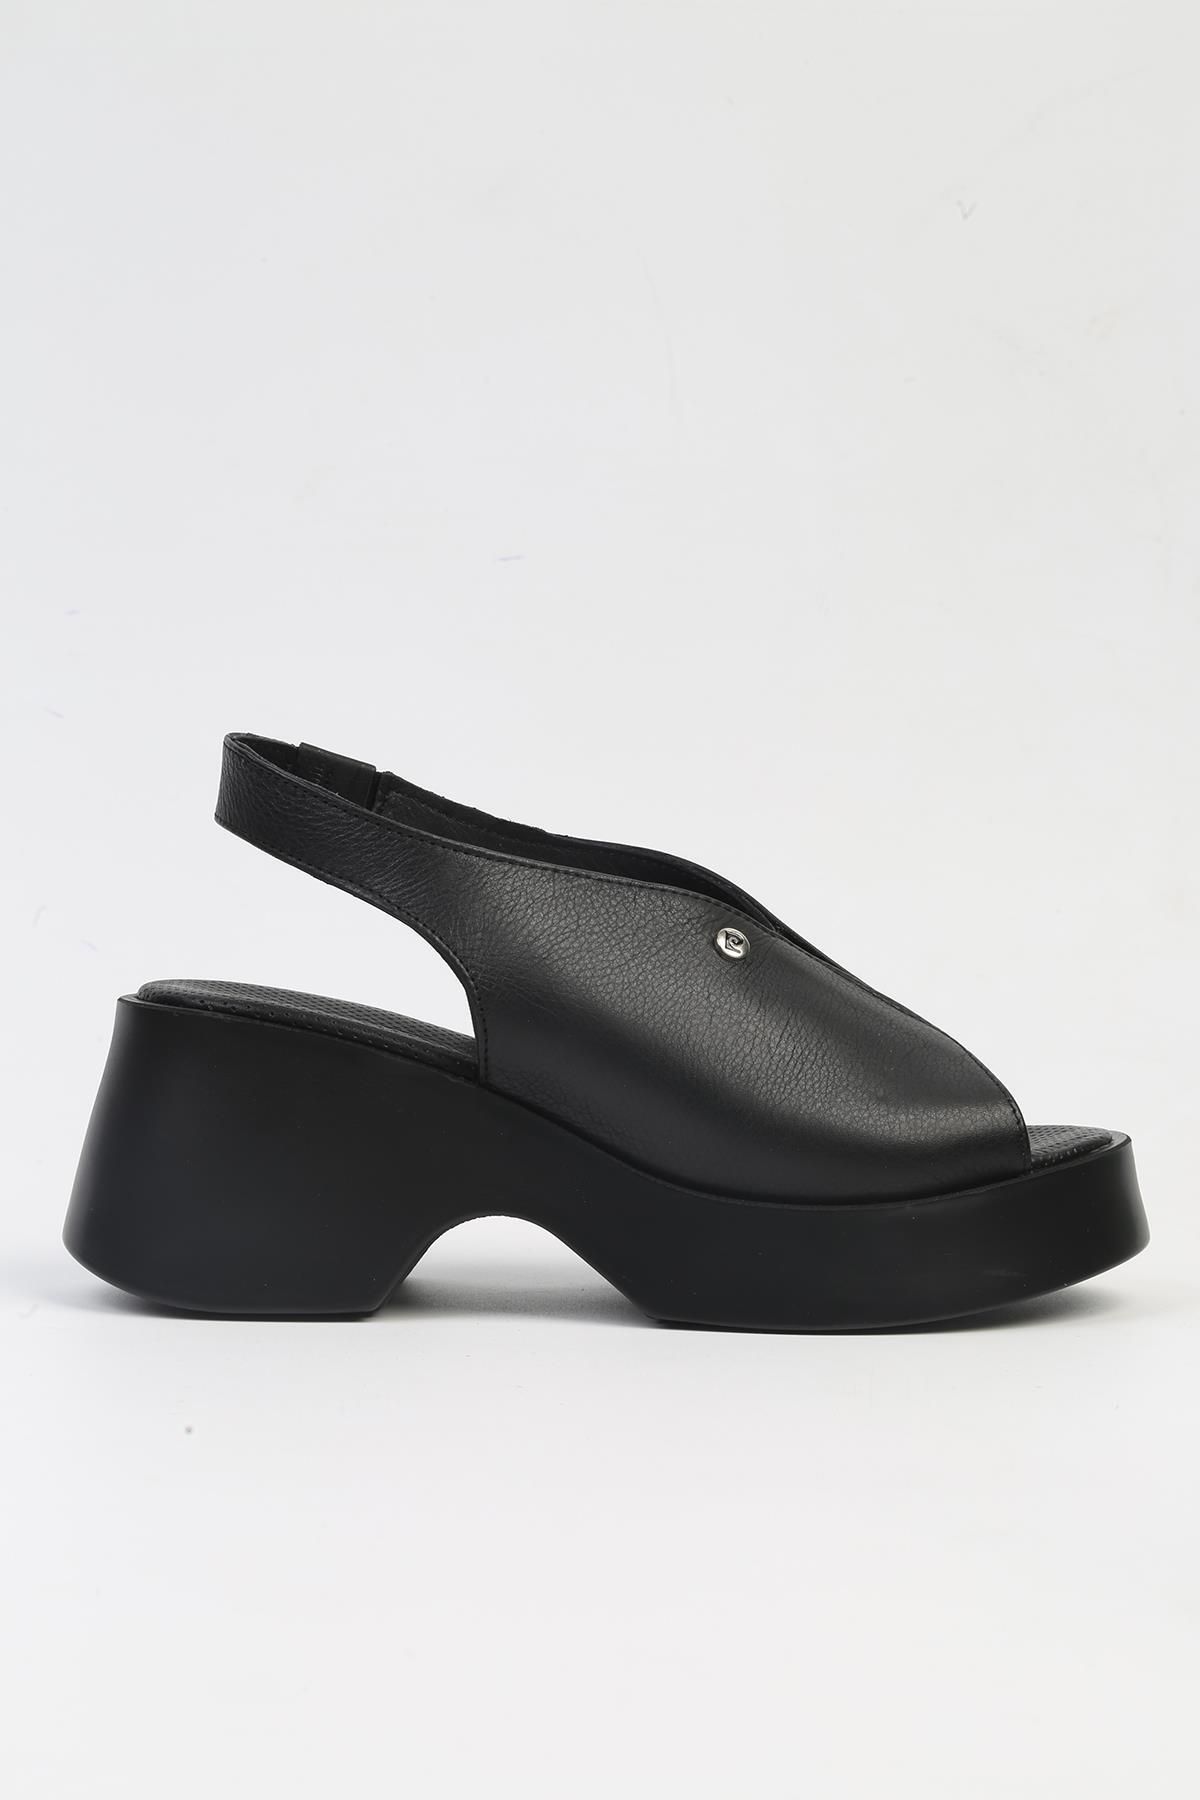 Pierre Cardin ® | PC-7200- 3968 Siyah-Kadın Topuklu Ayakkabı